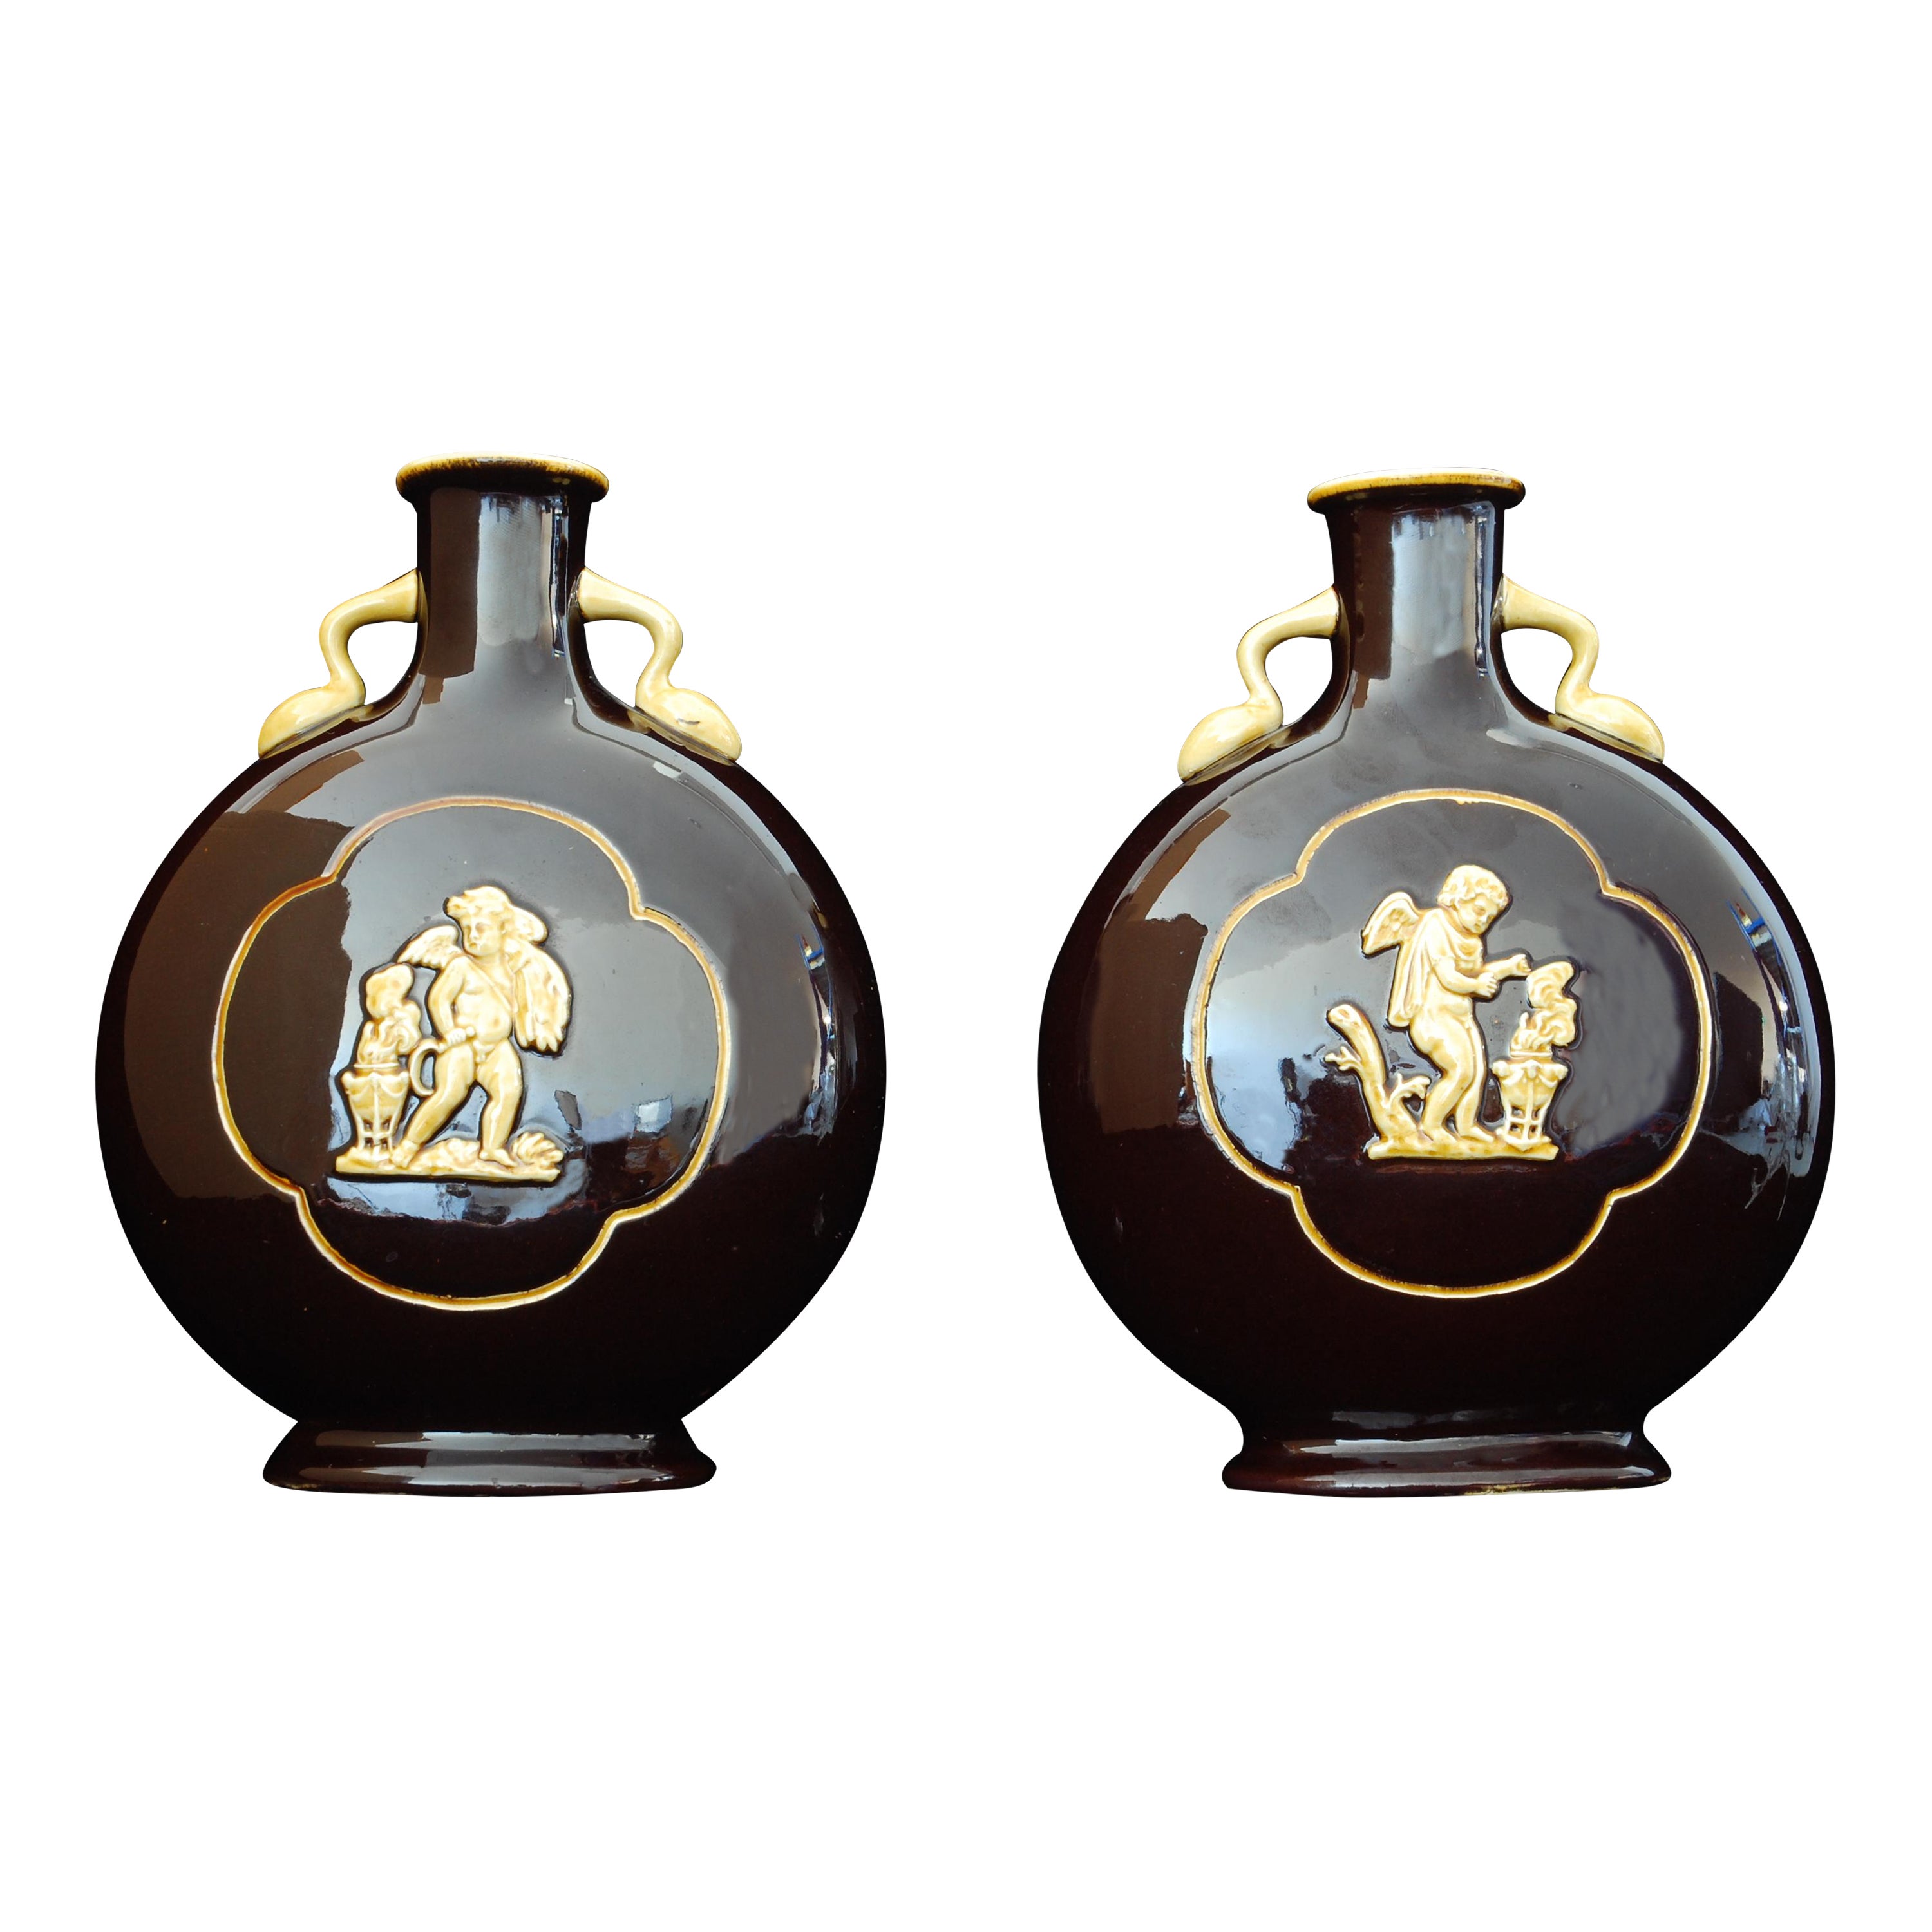 Paar Moon-Flask-Vasen in Form eines Mondsichels, Minton, um 1880